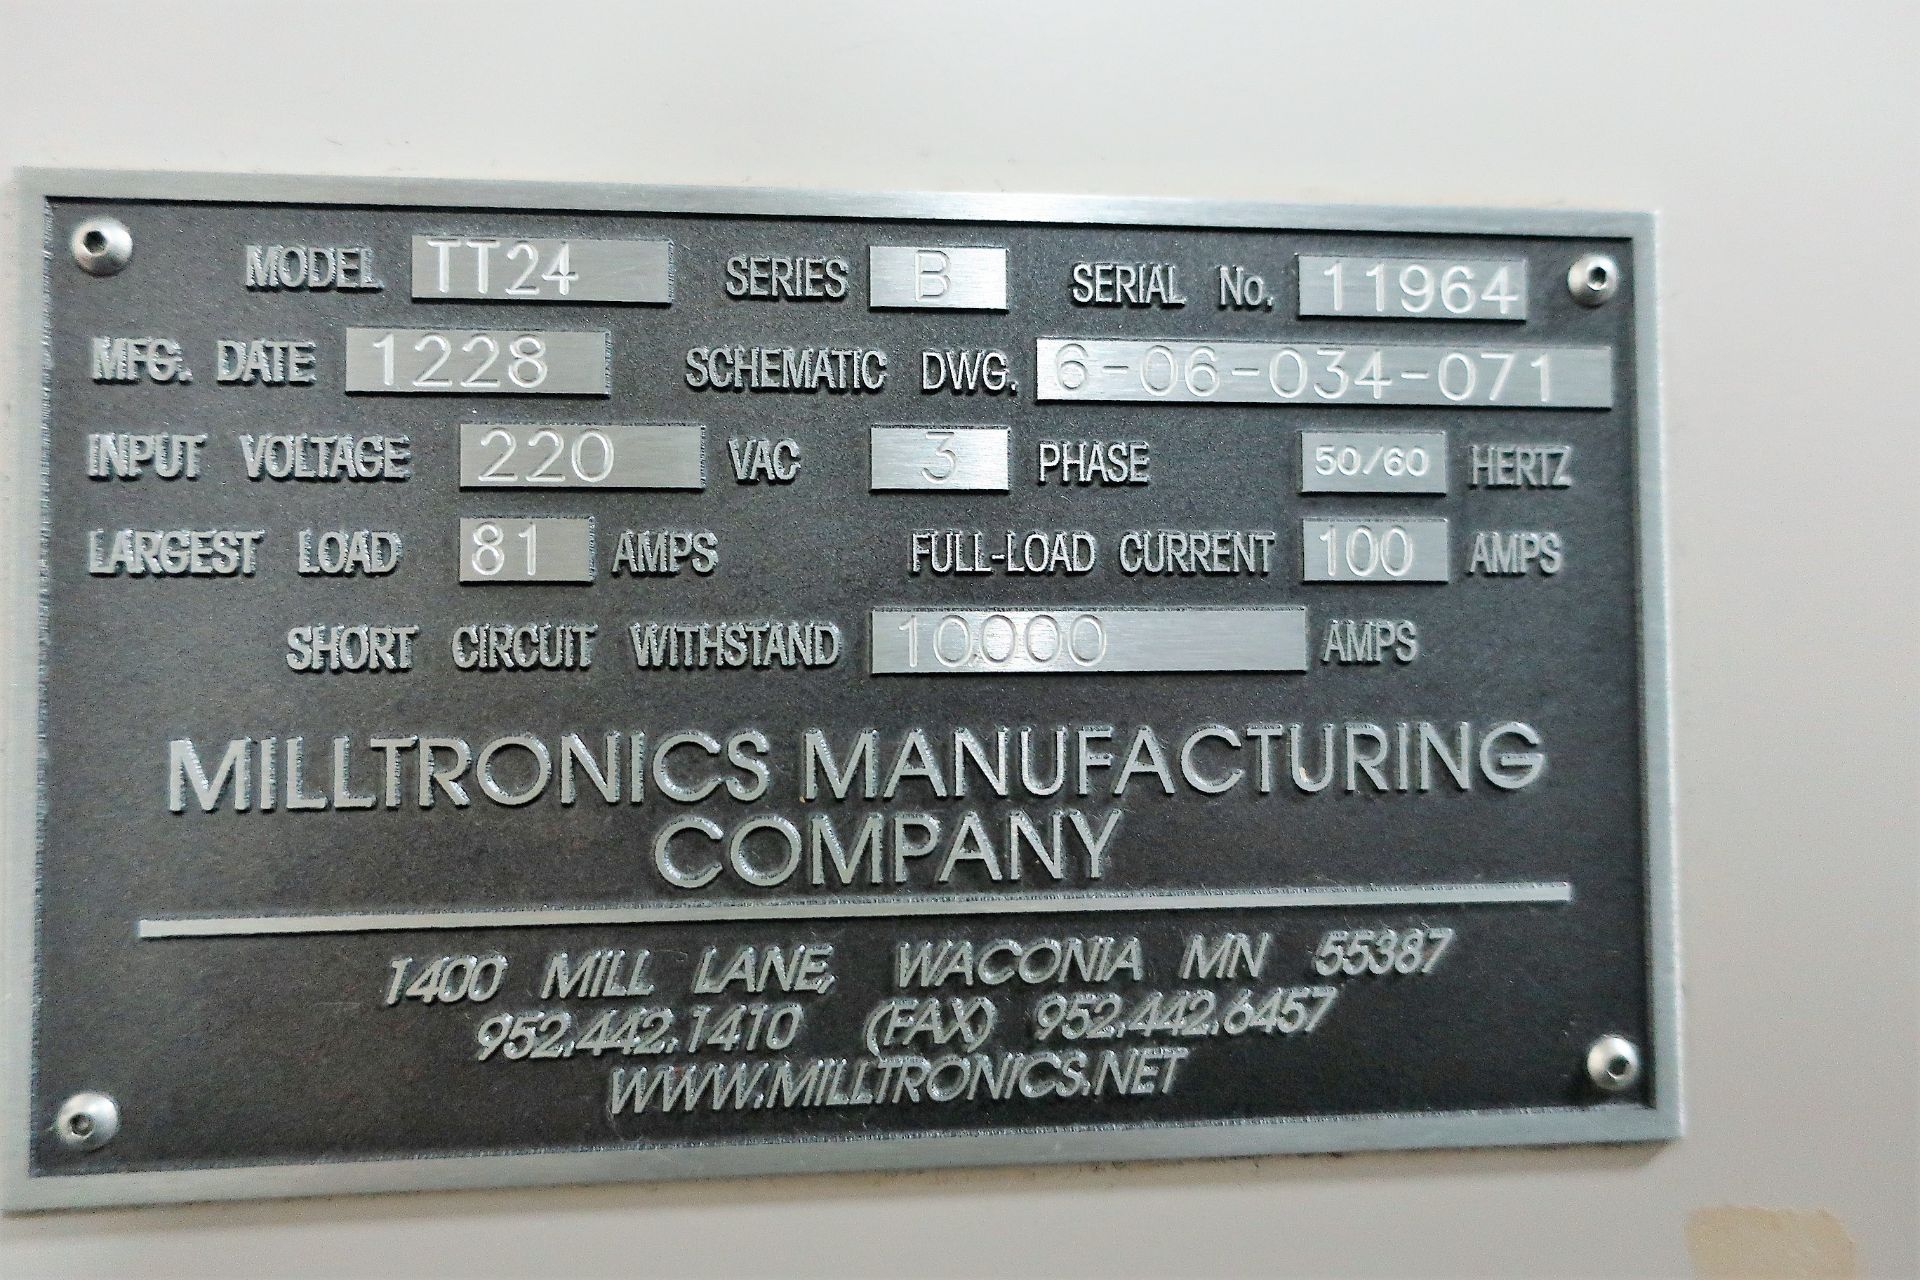 2012 MILLTRONICS TT24 3-AXIS CNC VERTICAL MACHINING CENTER W/PALLET CHANGER - Image 9 of 10